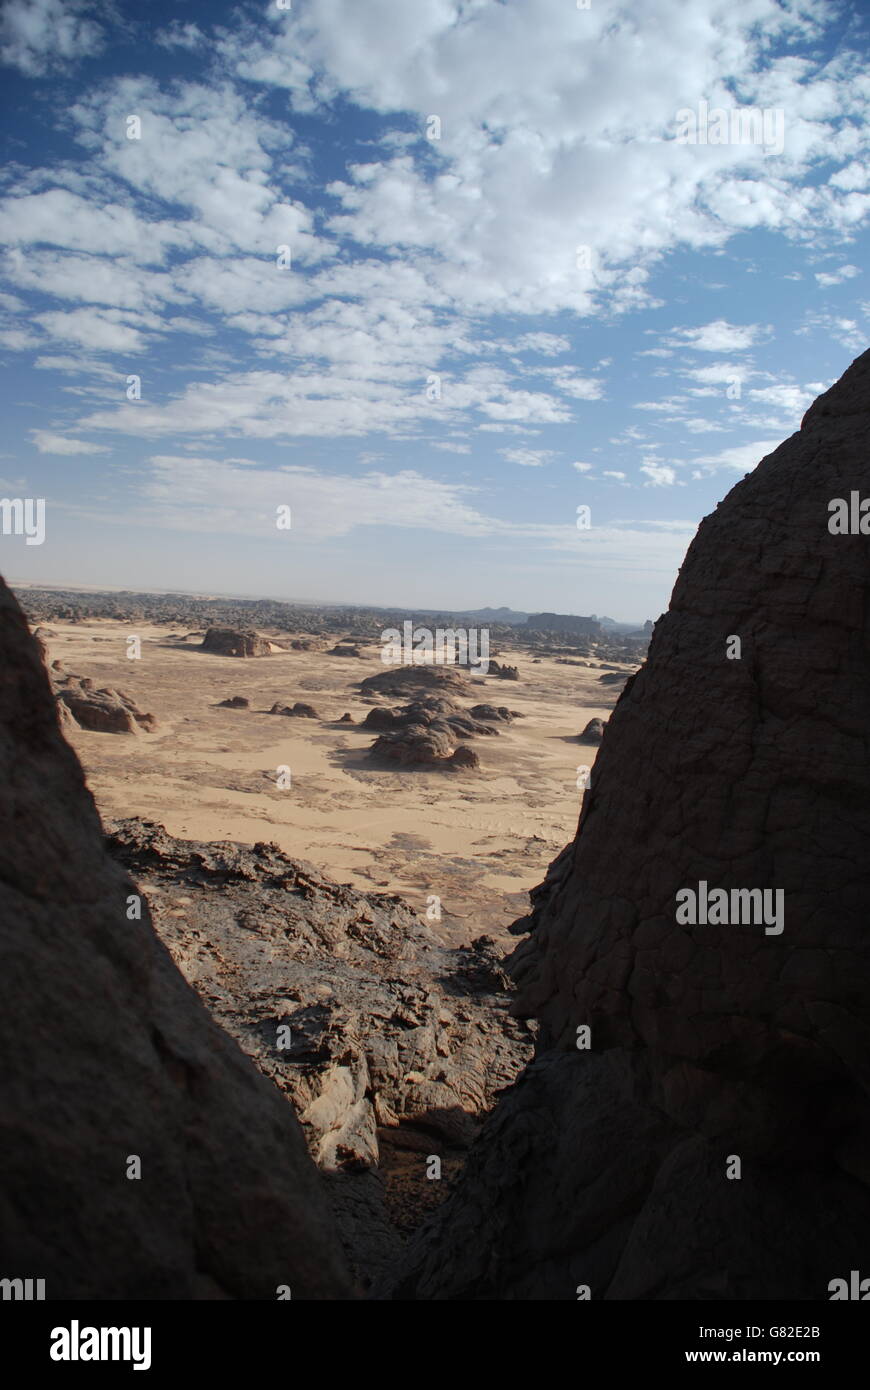 Désert, l'Algérie, ciel nuageux, sable, roche, montagnes, l'ombre, copy space Banque D'Images